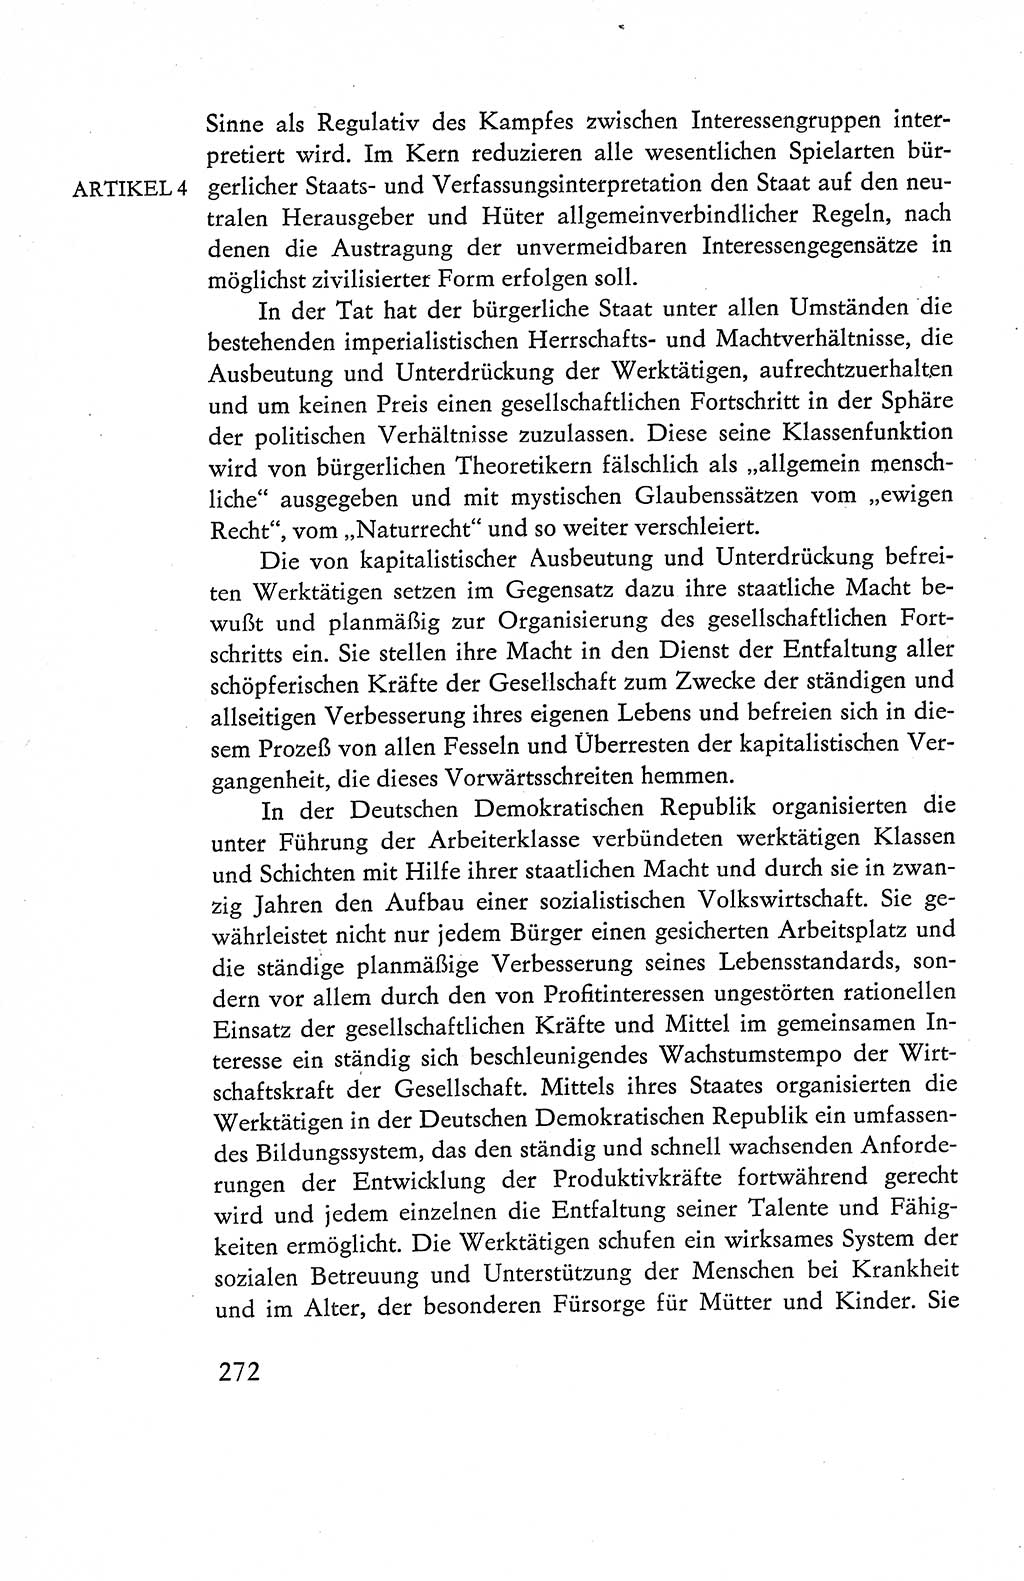 Verfassung der Deutschen Demokratischen Republik (DDR), Dokumente, Kommentar 1969, Band 1, Seite 272 (Verf. DDR Dok. Komm. 1969, Bd. 1, S. 272)